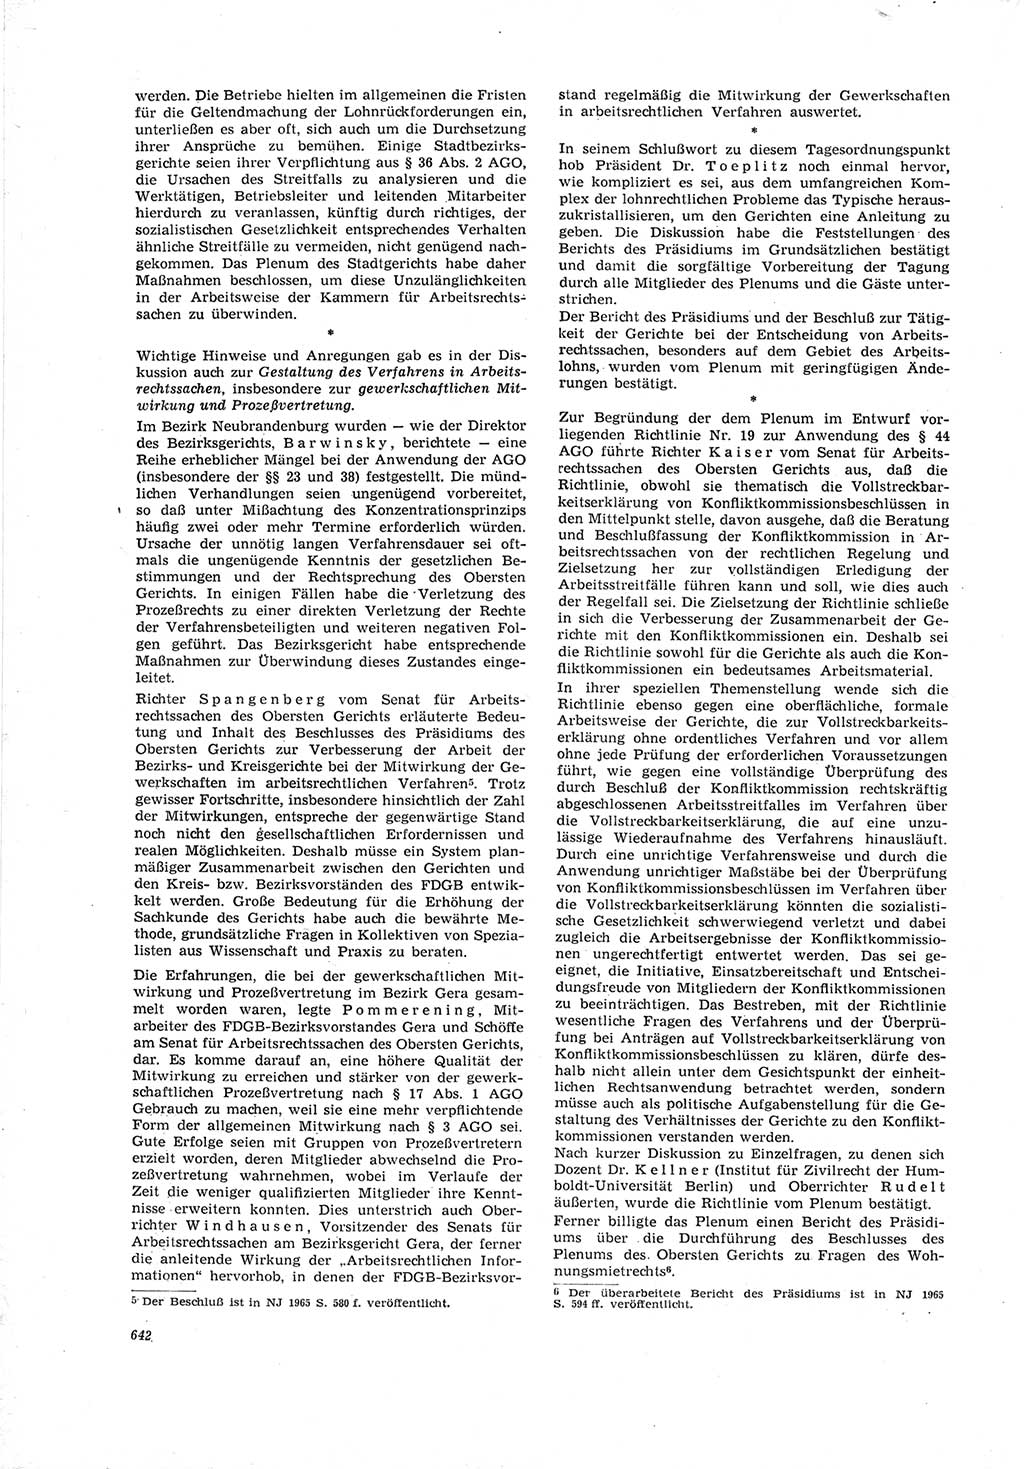 Neue Justiz (NJ), Zeitschrift für Recht und Rechtswissenschaft [Deutsche Demokratische Republik (DDR)], 19. Jahrgang 1965, Seite 642 (NJ DDR 1965, S. 642)